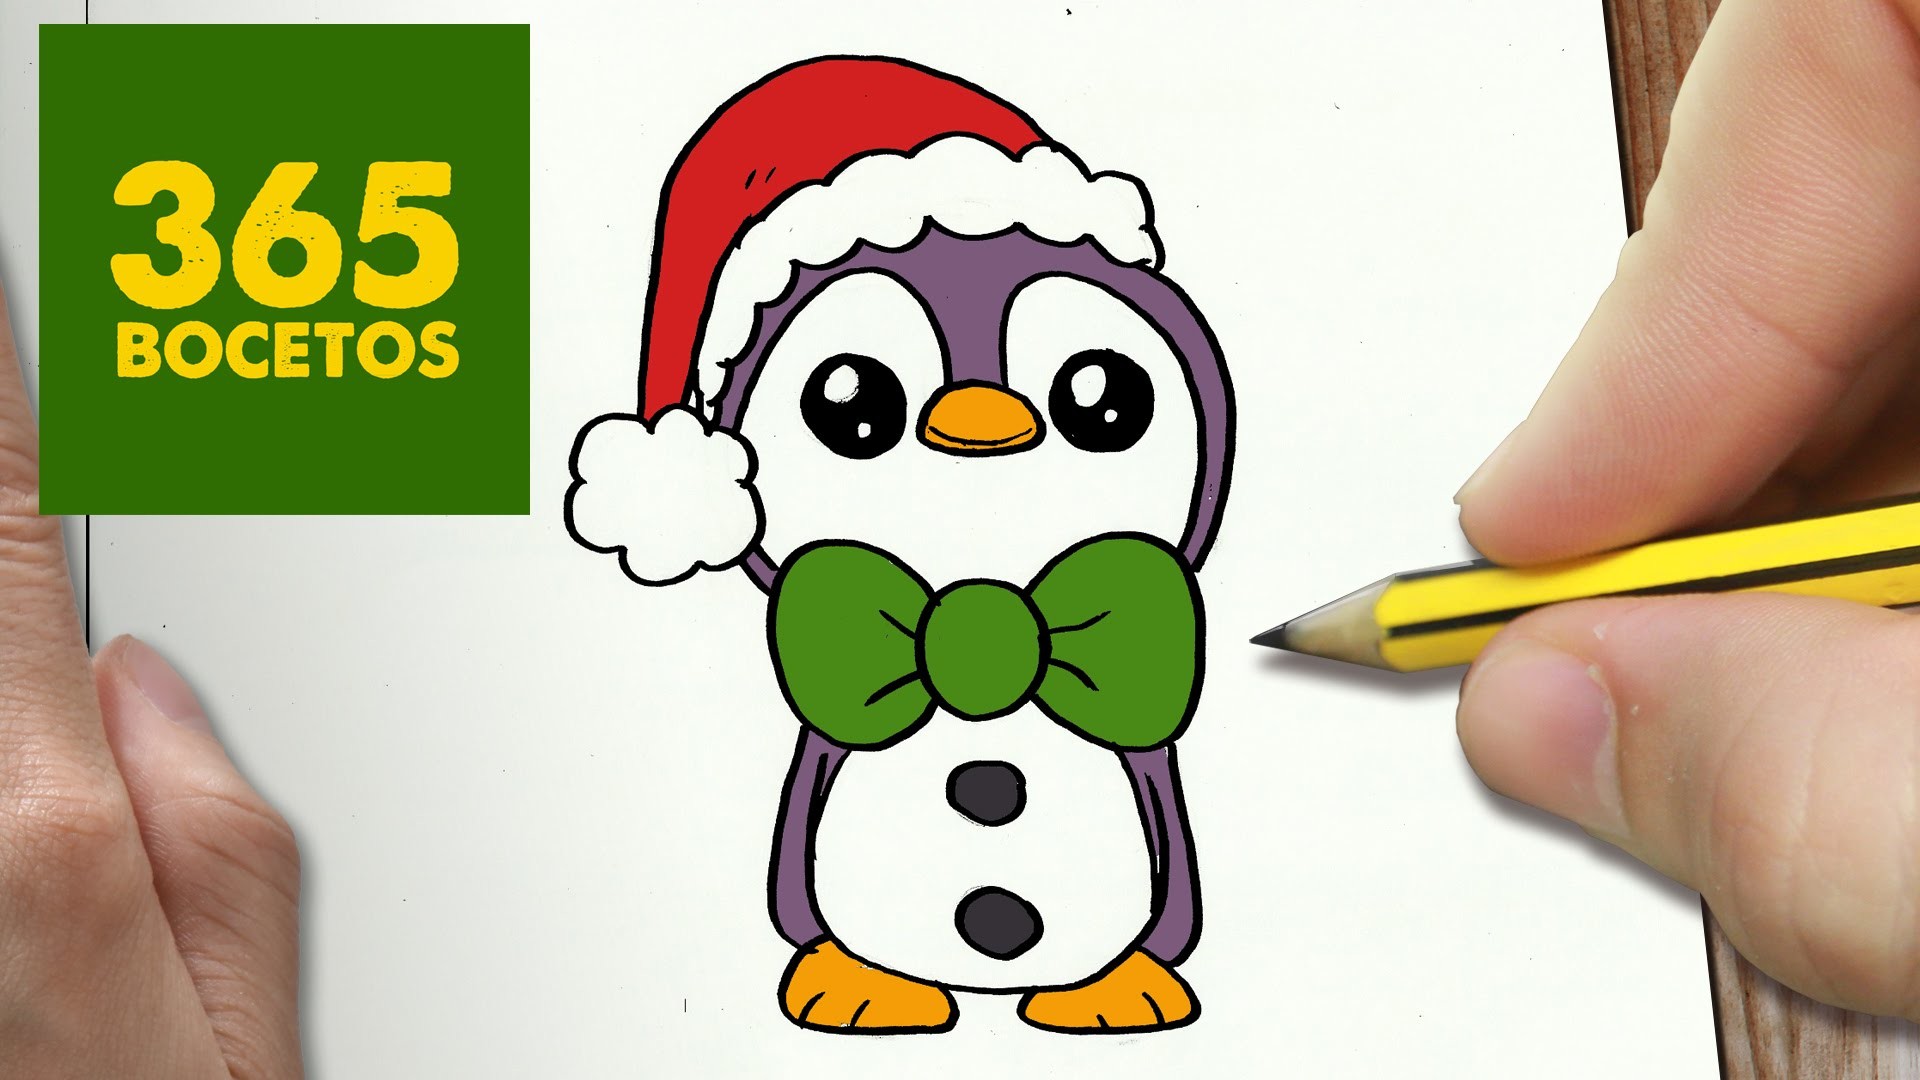 COMO DIBUJAR UN PINGUINO PARA NAVIDAD PASO A PASO: Dibujos kawaii navideños - How to draw a Penguin